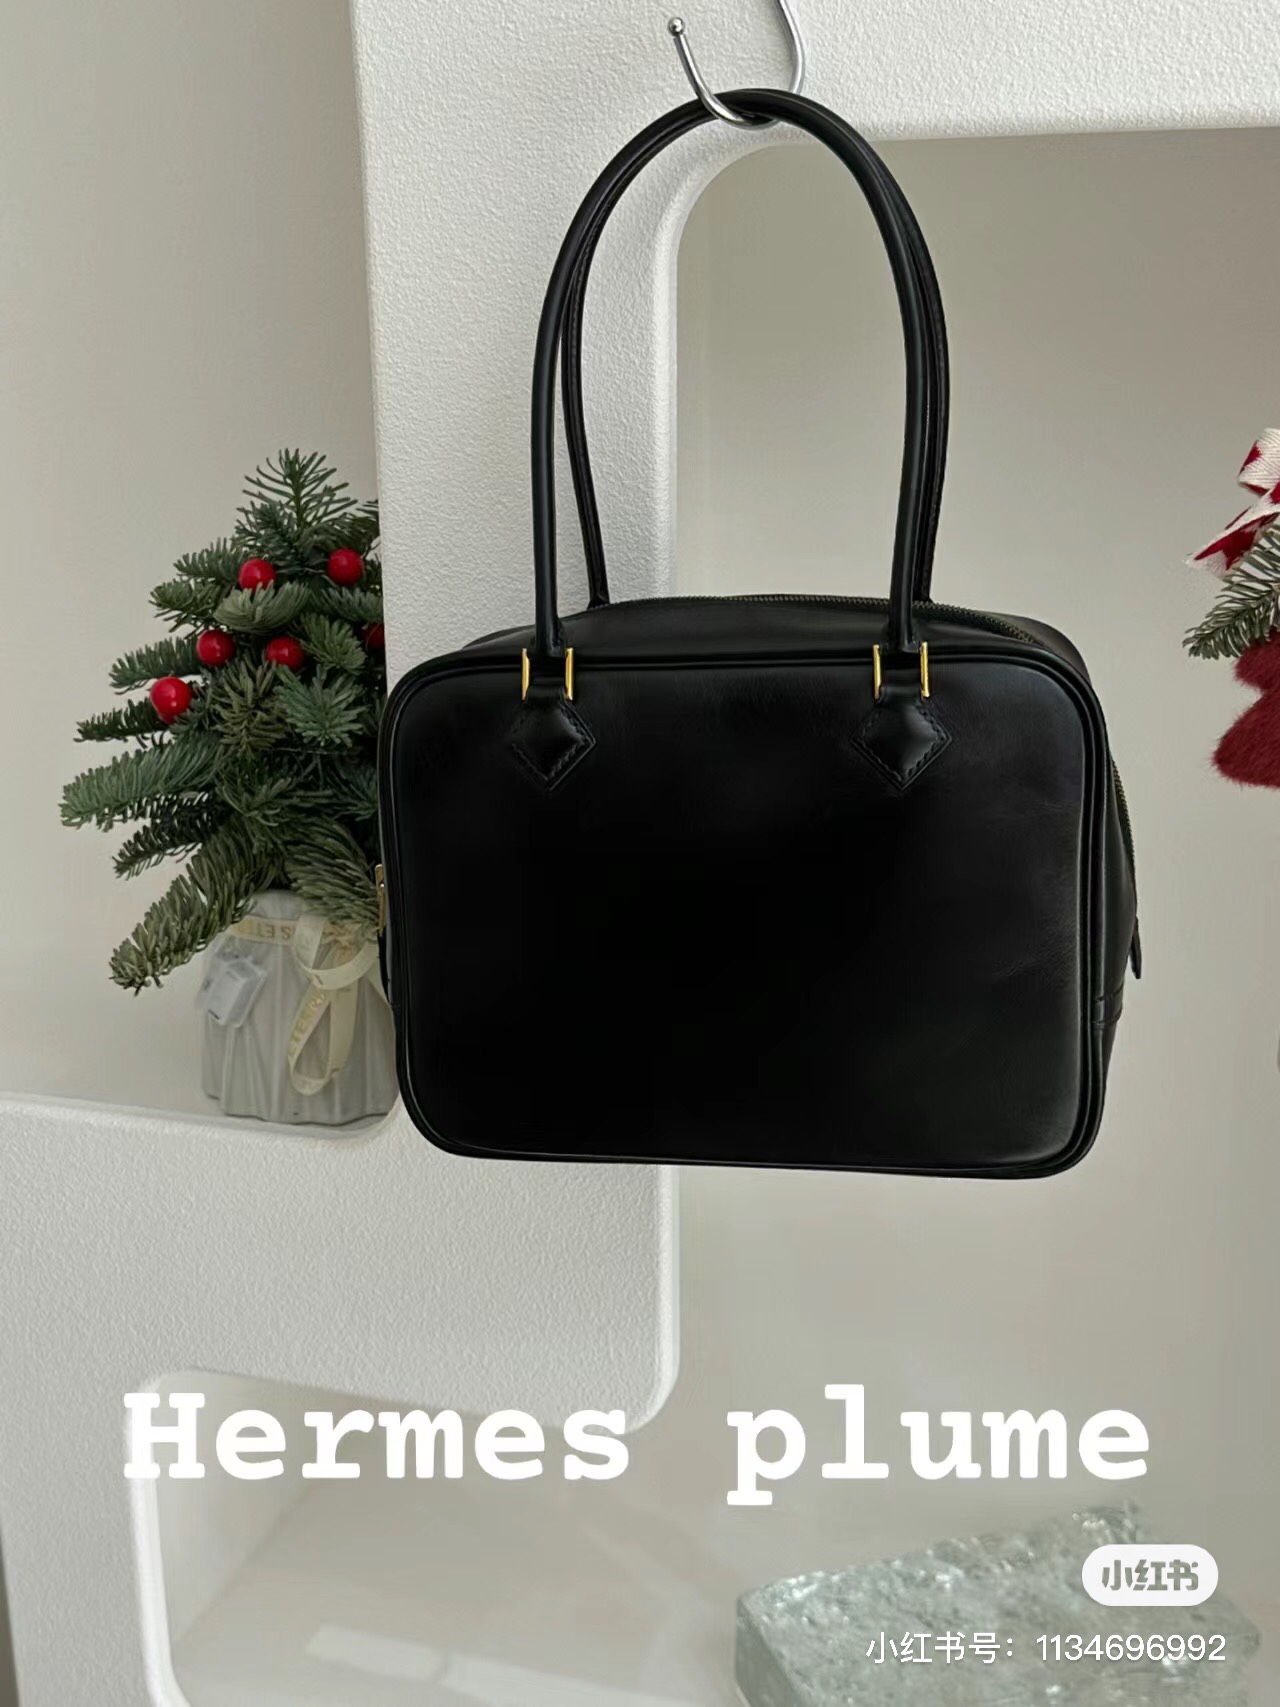 Hermes plume mini\n在静奢和极简之外多了几分隽秀可爱